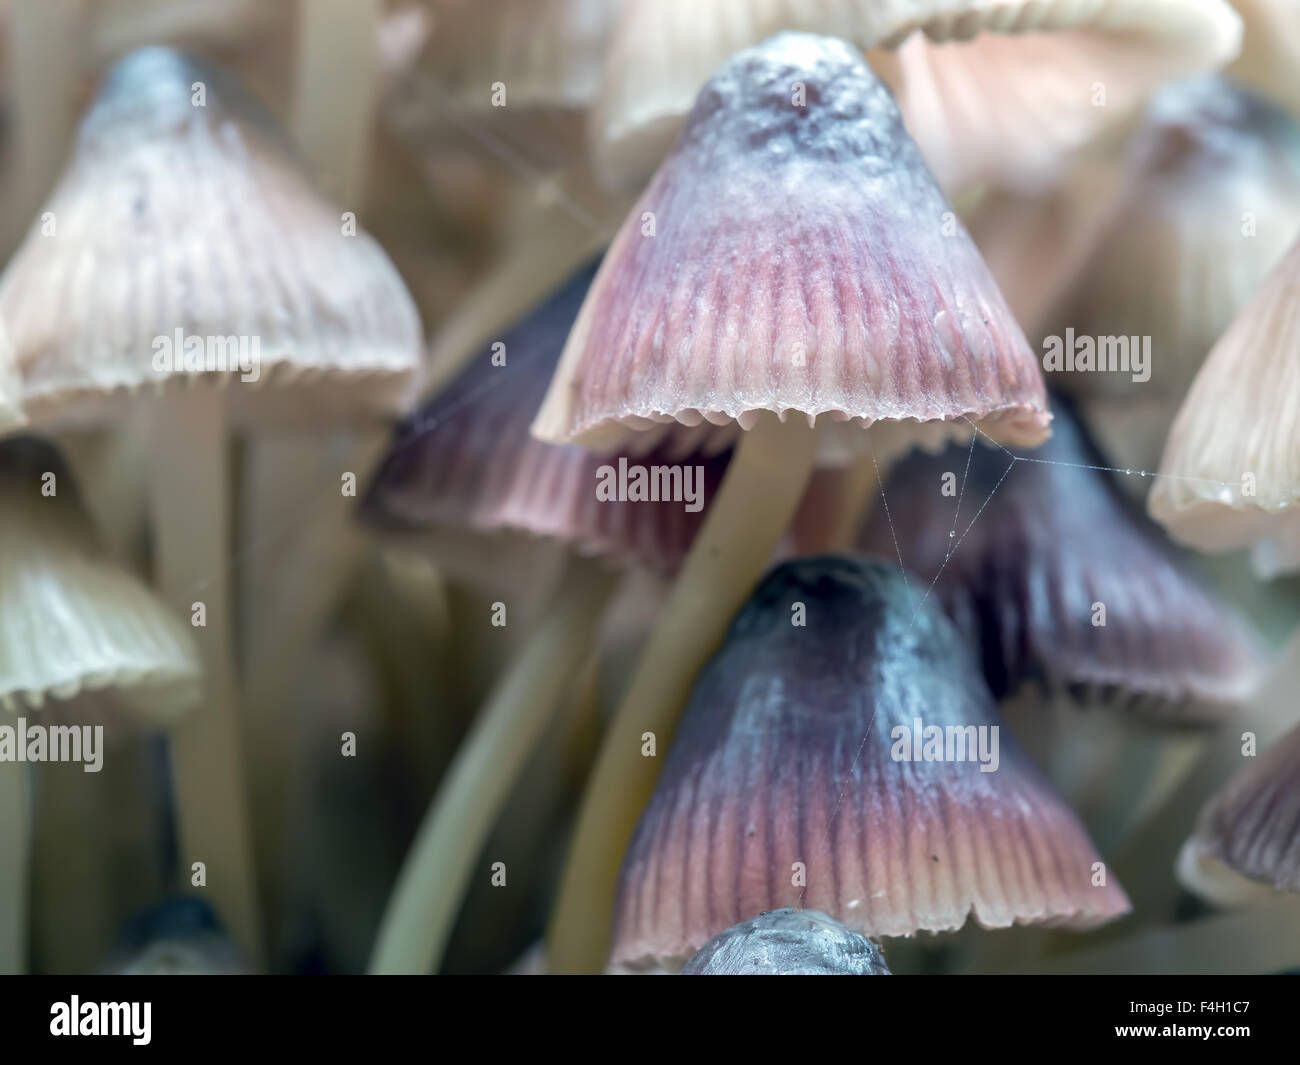 Gruppo di toadstool funghi che crescono in foresta Foto Stock